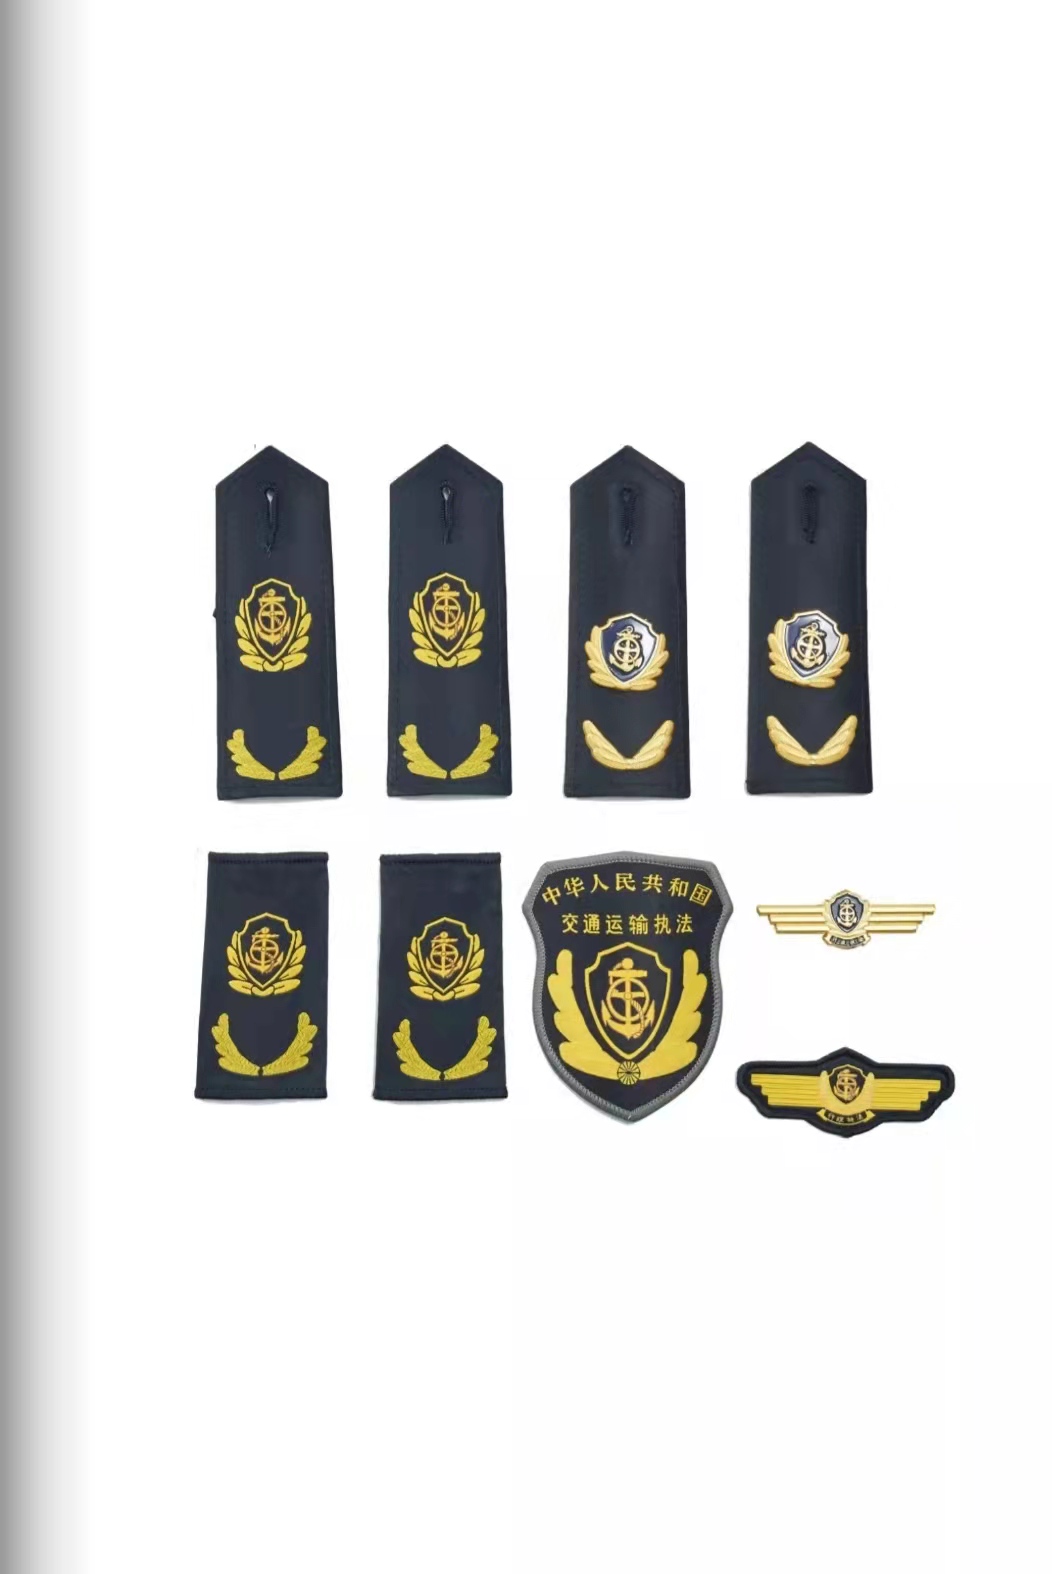 海南六部门统一交通运输执法服装标志